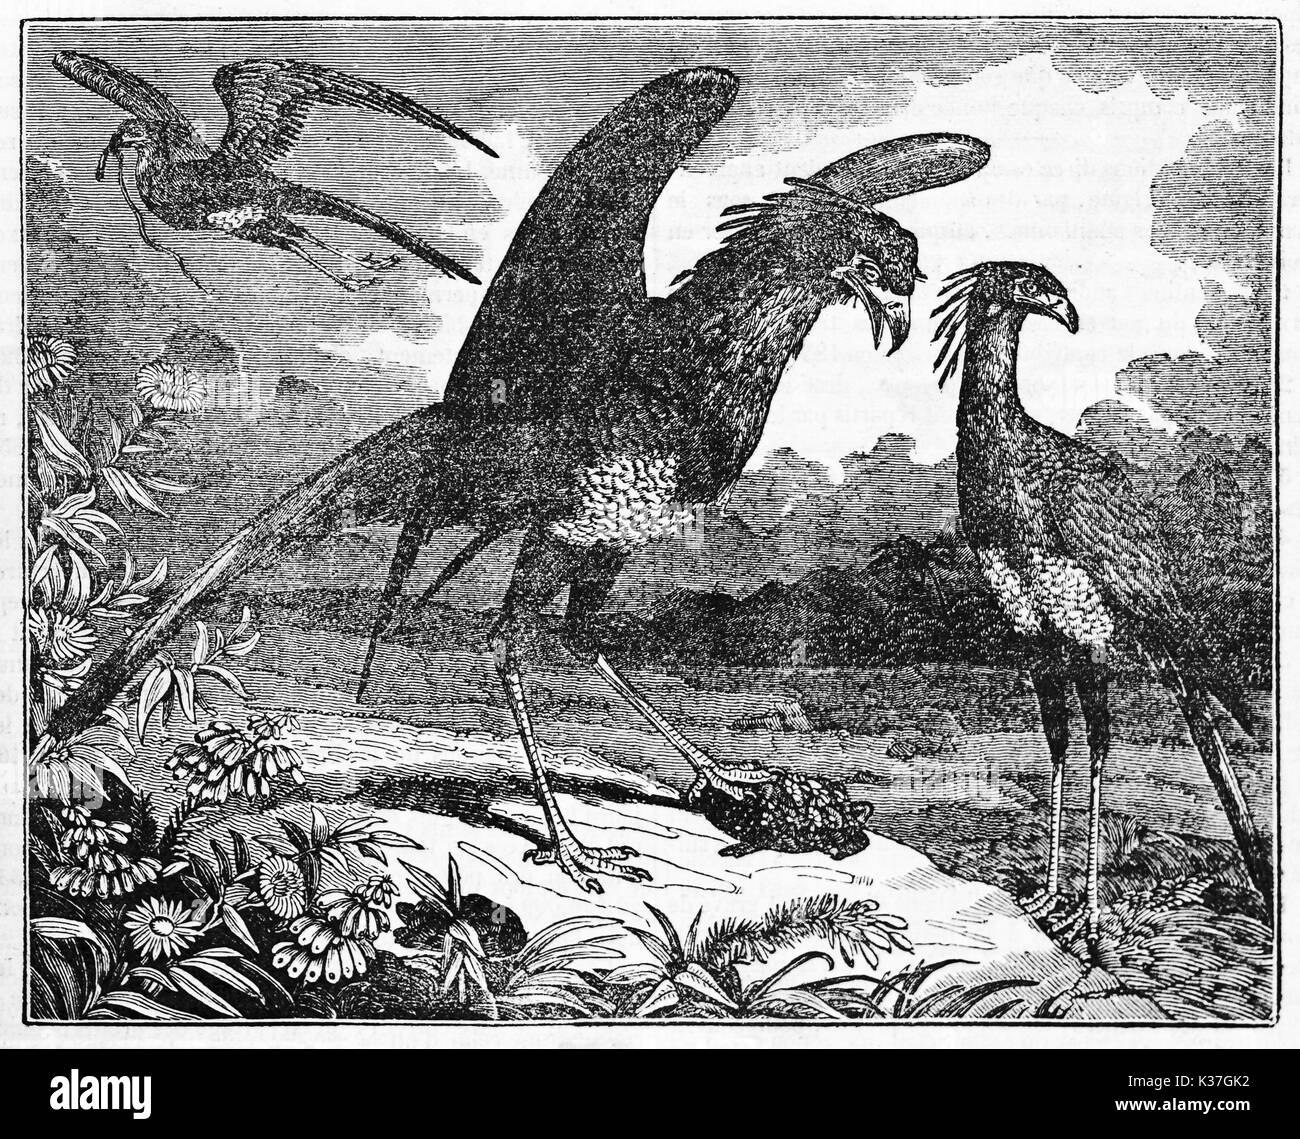 Secretarybird (Sagittarius serpentarius) in seiner natürlichen Umgebung Gerichte ein weibliches Exemplar. Alte Illustration von unbekannter Autor auf magasin Pittoresque Paris 1834 veröffentlicht. Stockfoto